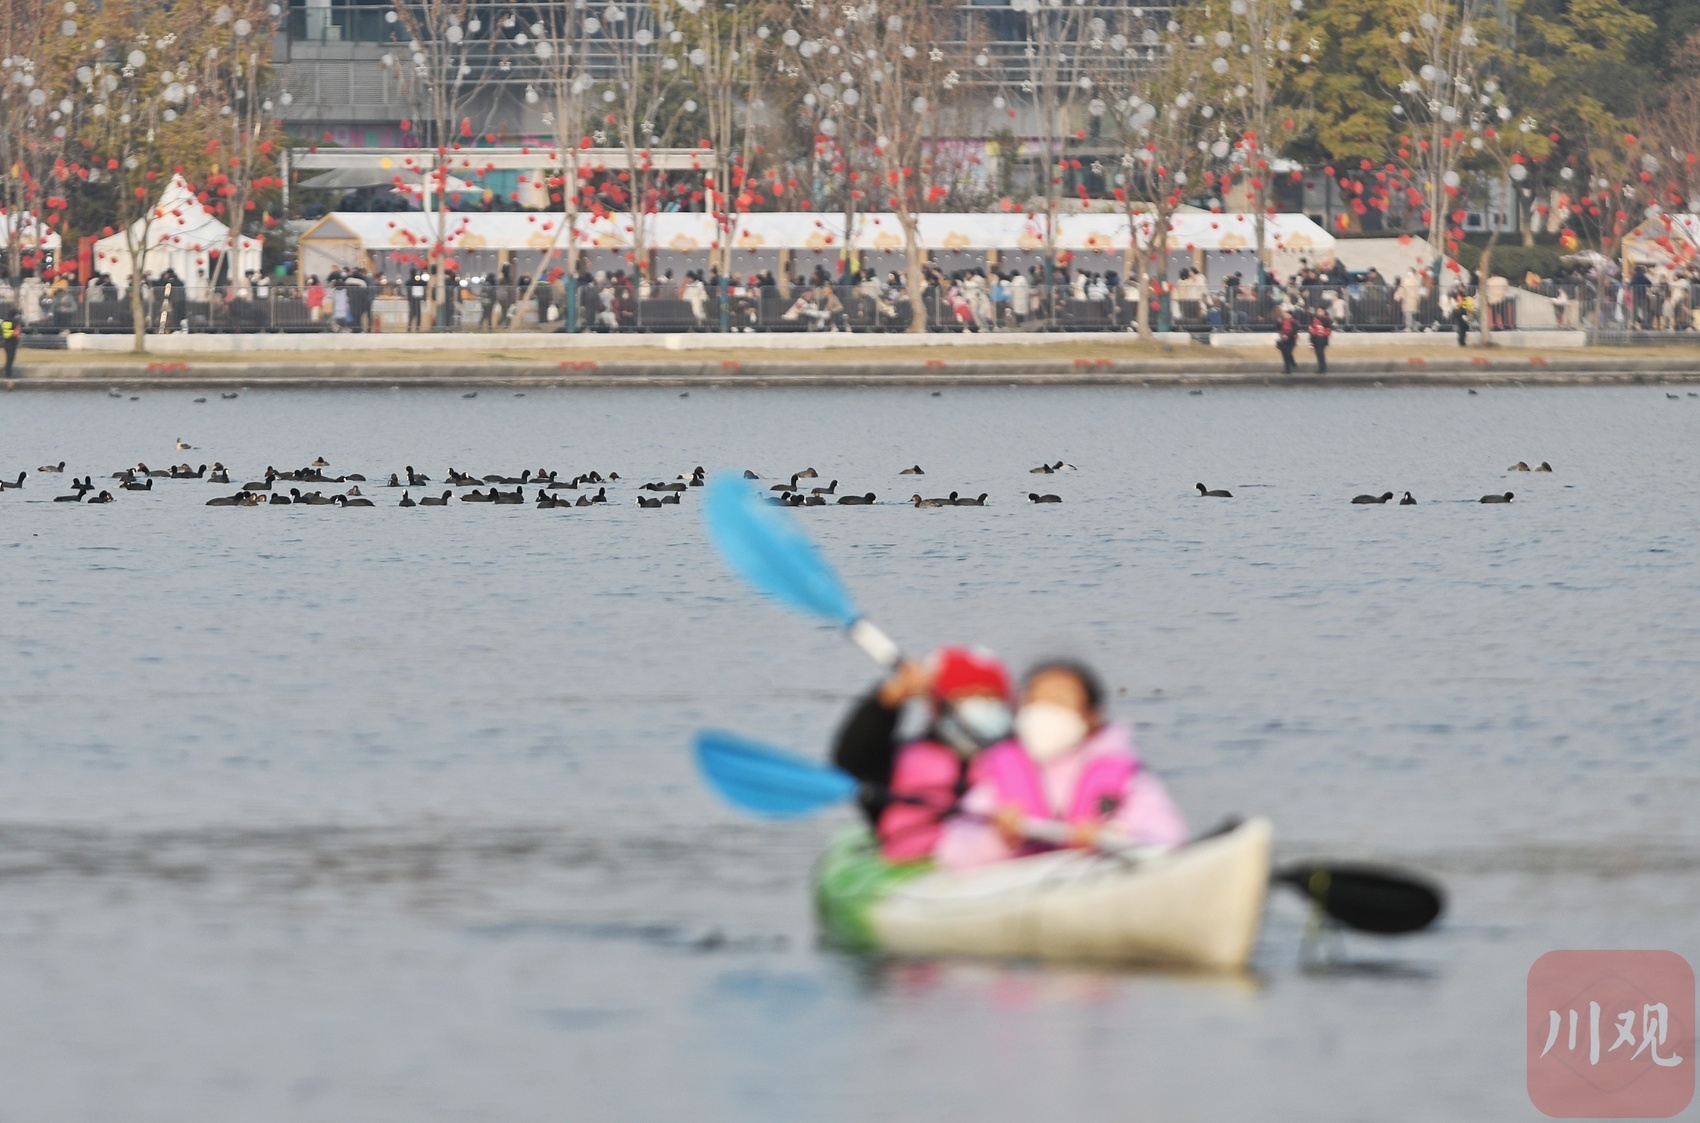 （轉載）劃皮划艇 解鎖成都興隆湖的新耍法